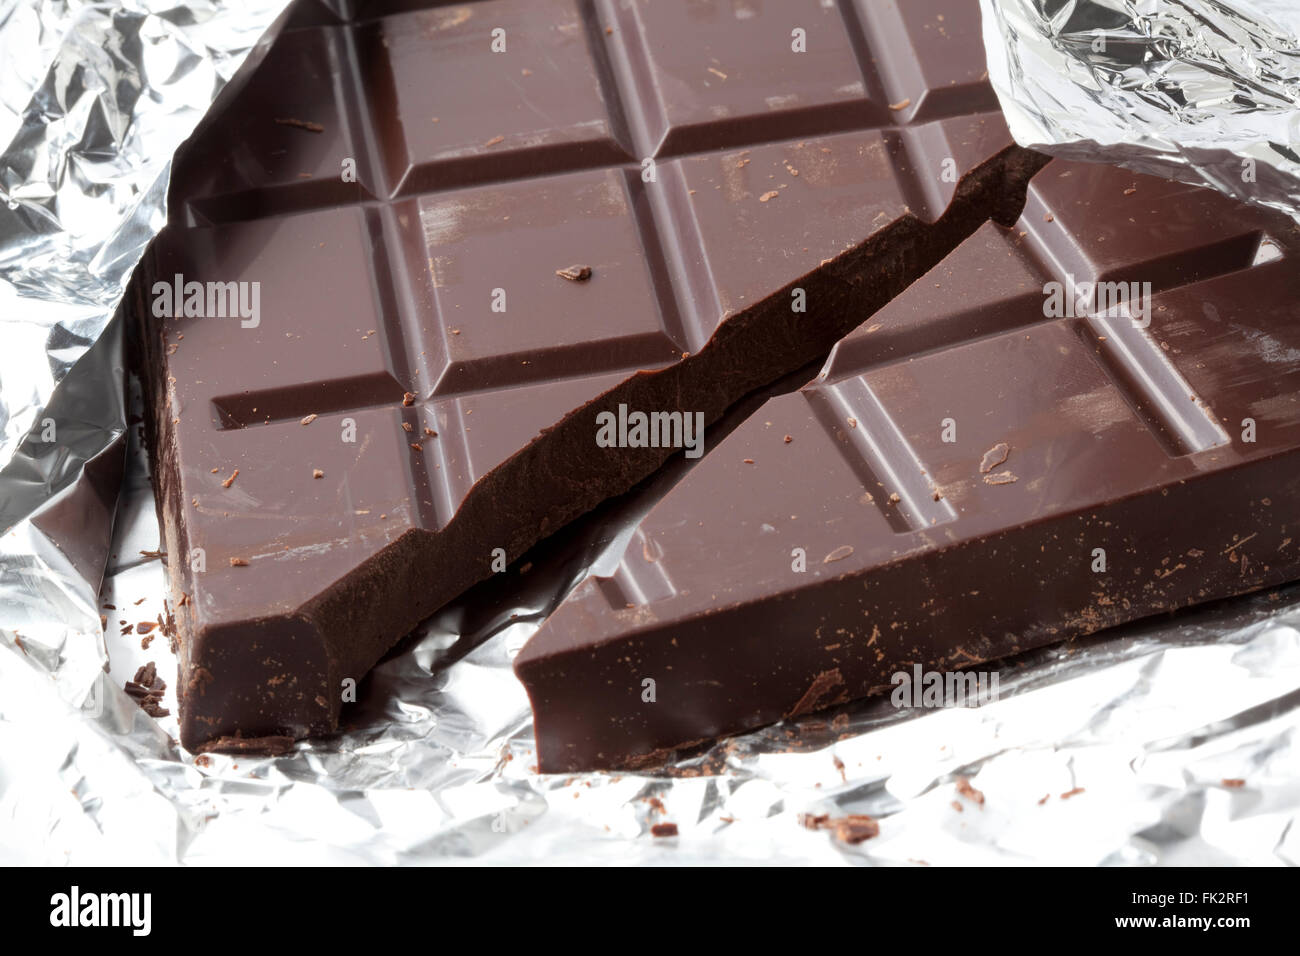 Reine braune Schokolade auf Alufolie Stockfoto